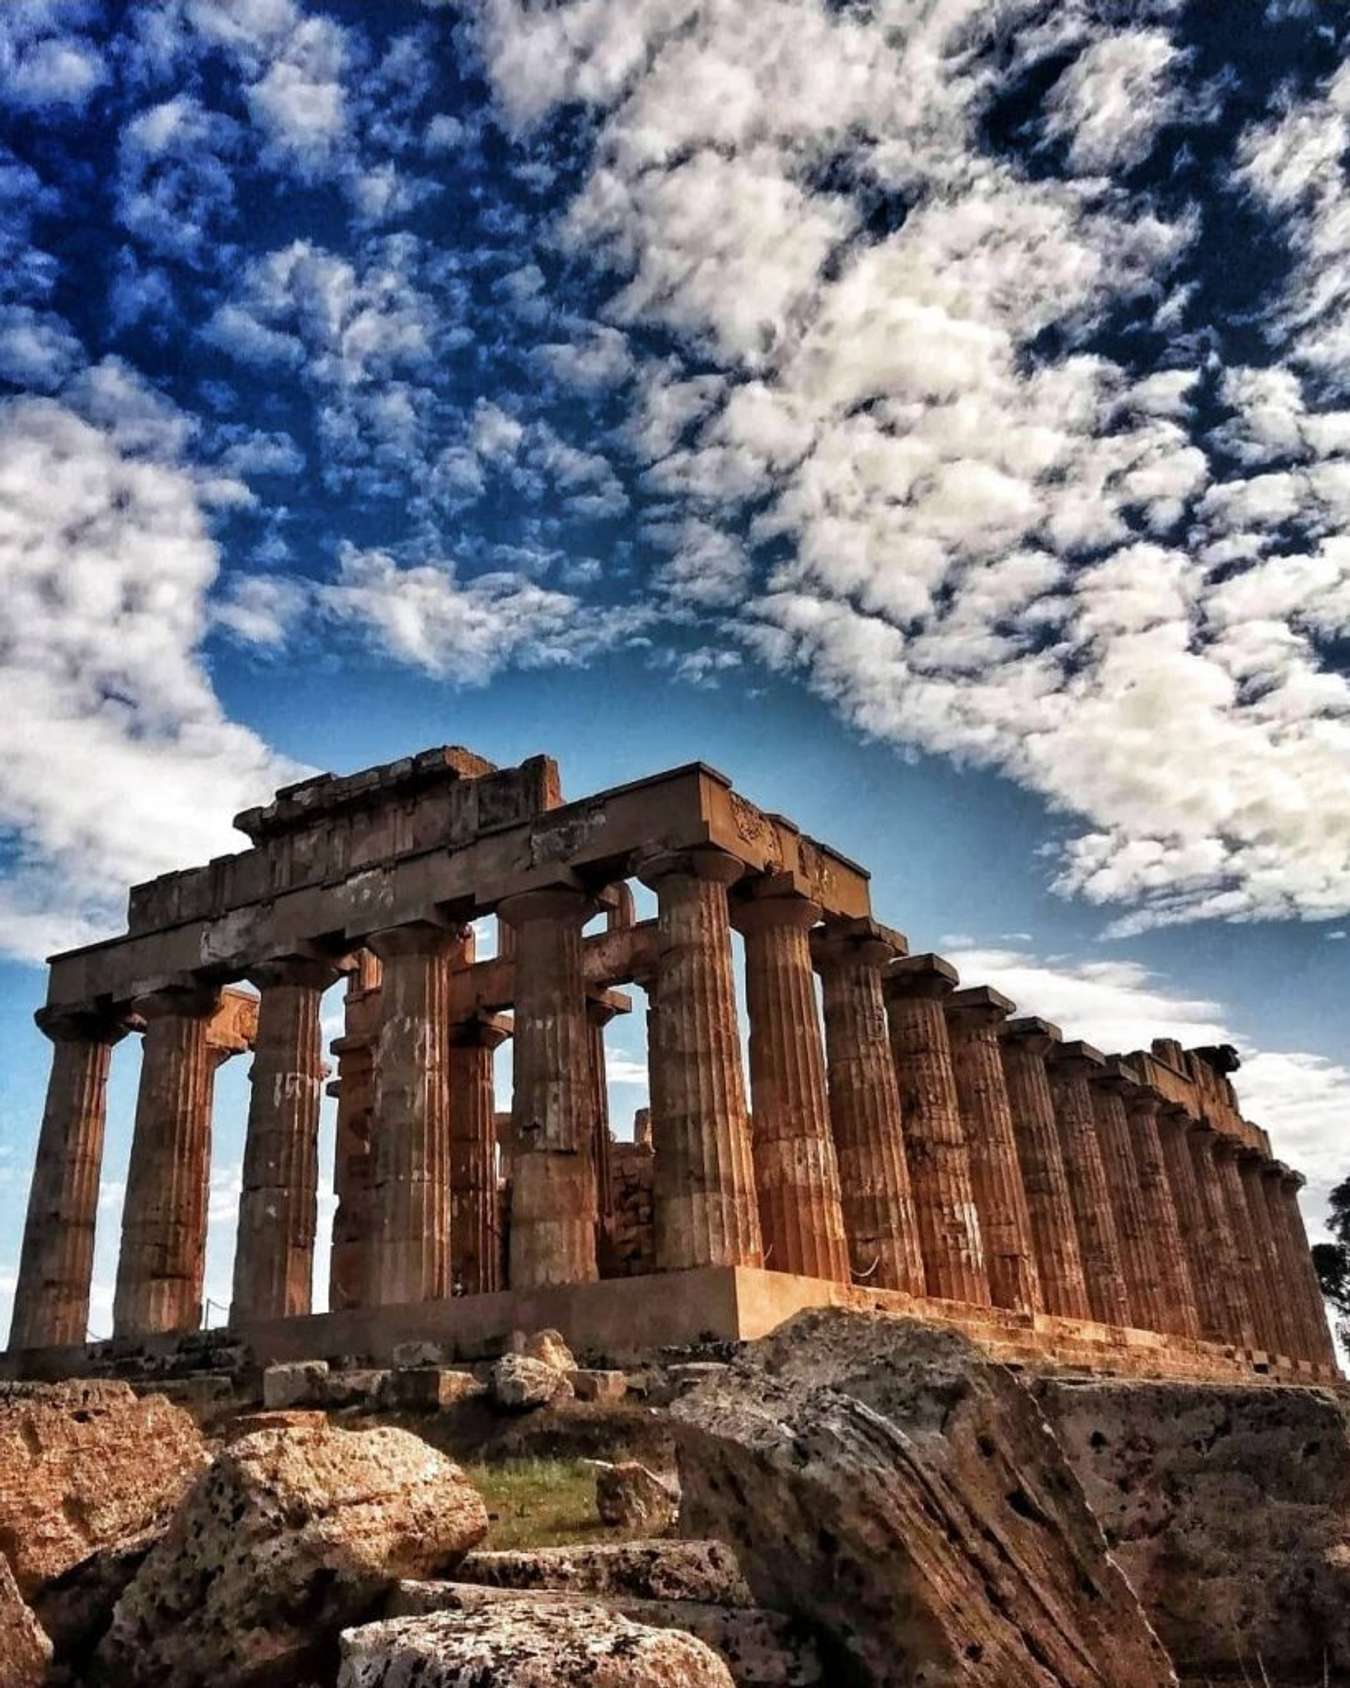 Du lịch Hy Lạp là cơ hội để khám phá văn hoá cổ đại với những khu di tích kiến trúc độc đáo và đầy lịch sử. Tại đây, bạn có thể tìm hiểu về sự phát triển của nền văn minh Hy Lạp cổ đại từ thời kỳ cổ đại đến hiện đại. Hãy khám phá những trang web du lịch để bắt đầu hành trình văn hóa và khám phá đất nước này.